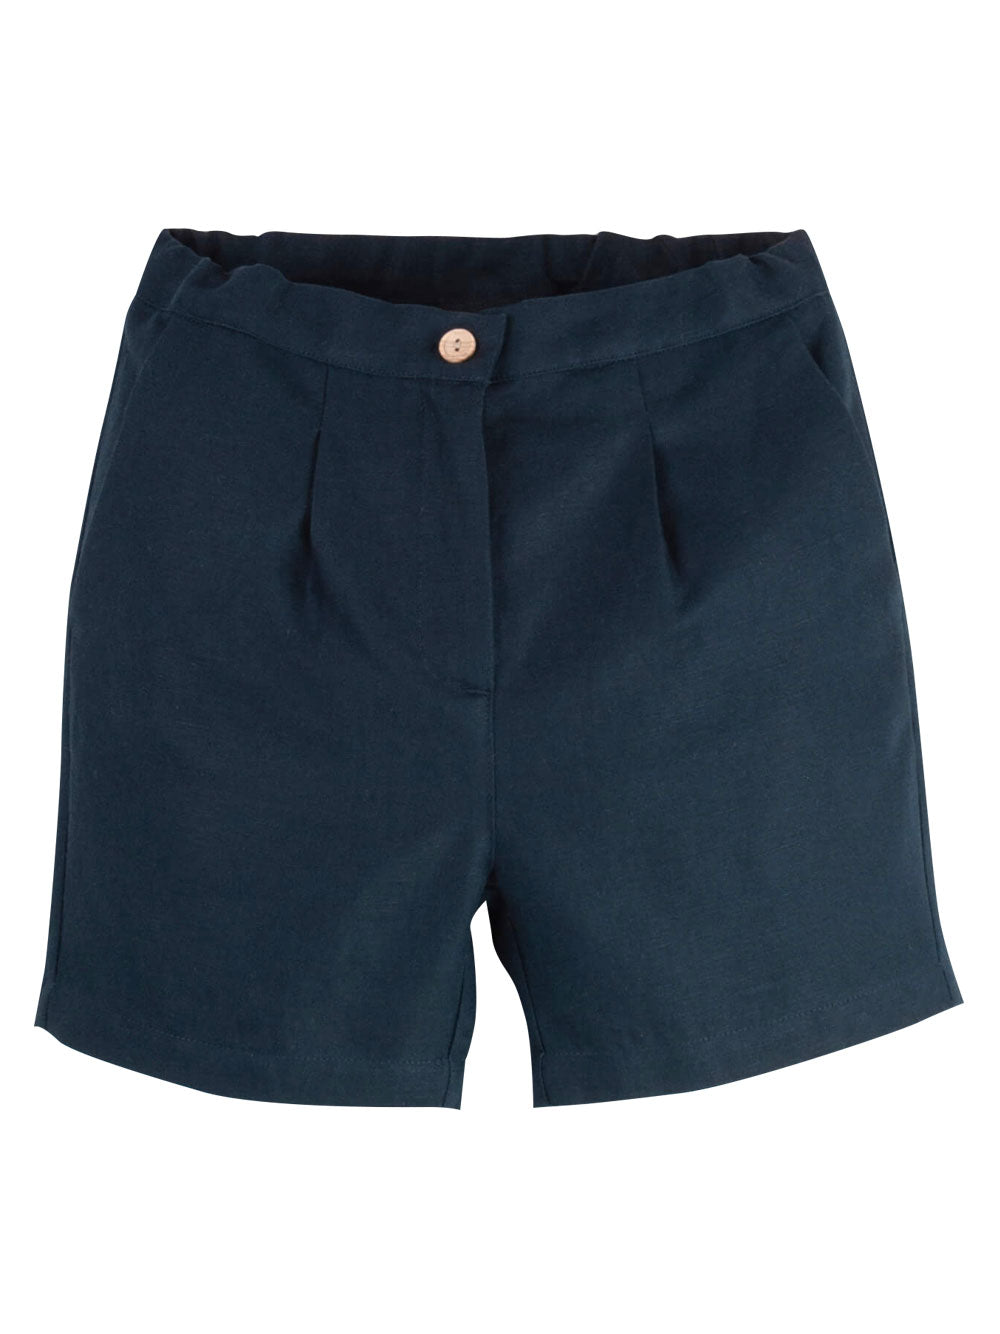 PREORDER: Navy Blue Chino Shorts